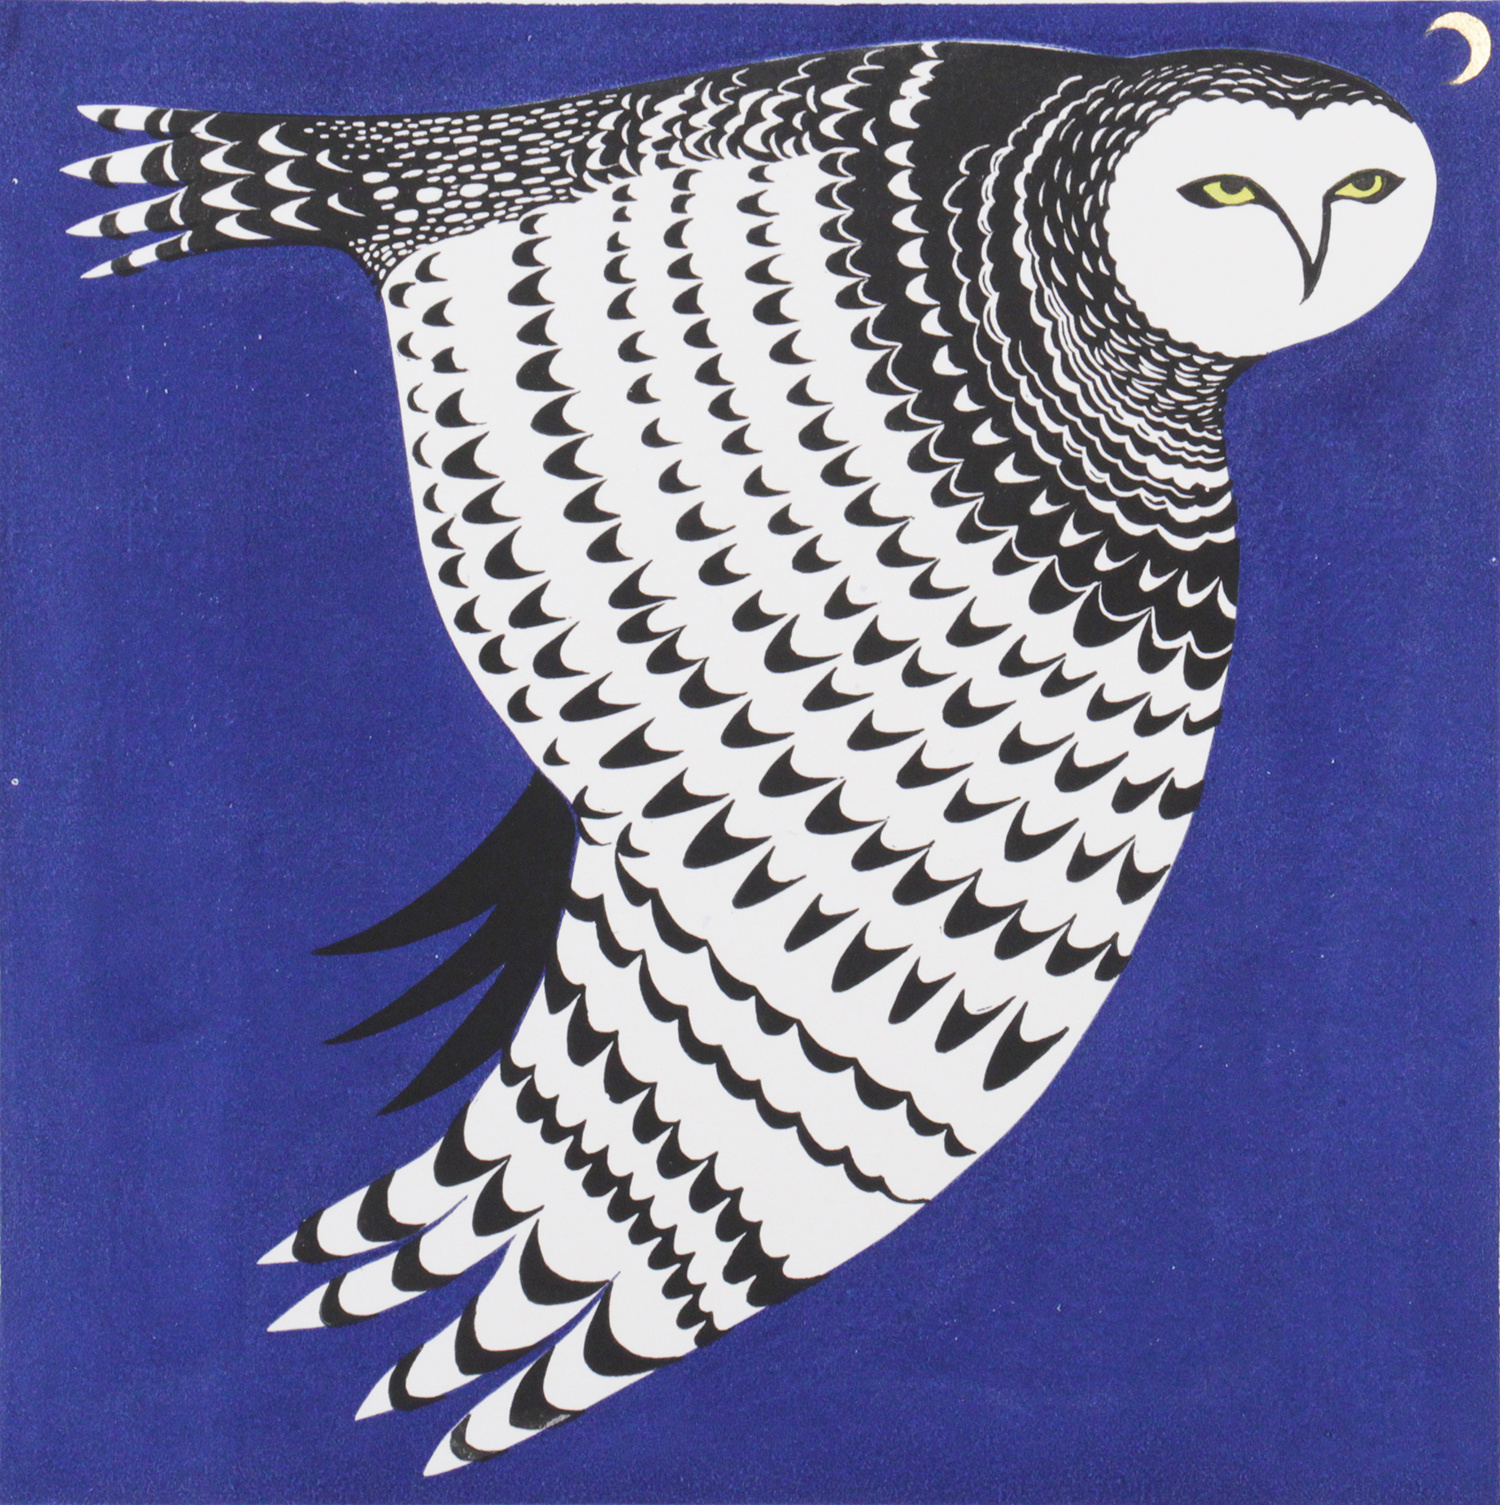 Snowy Owl by Jeremy James